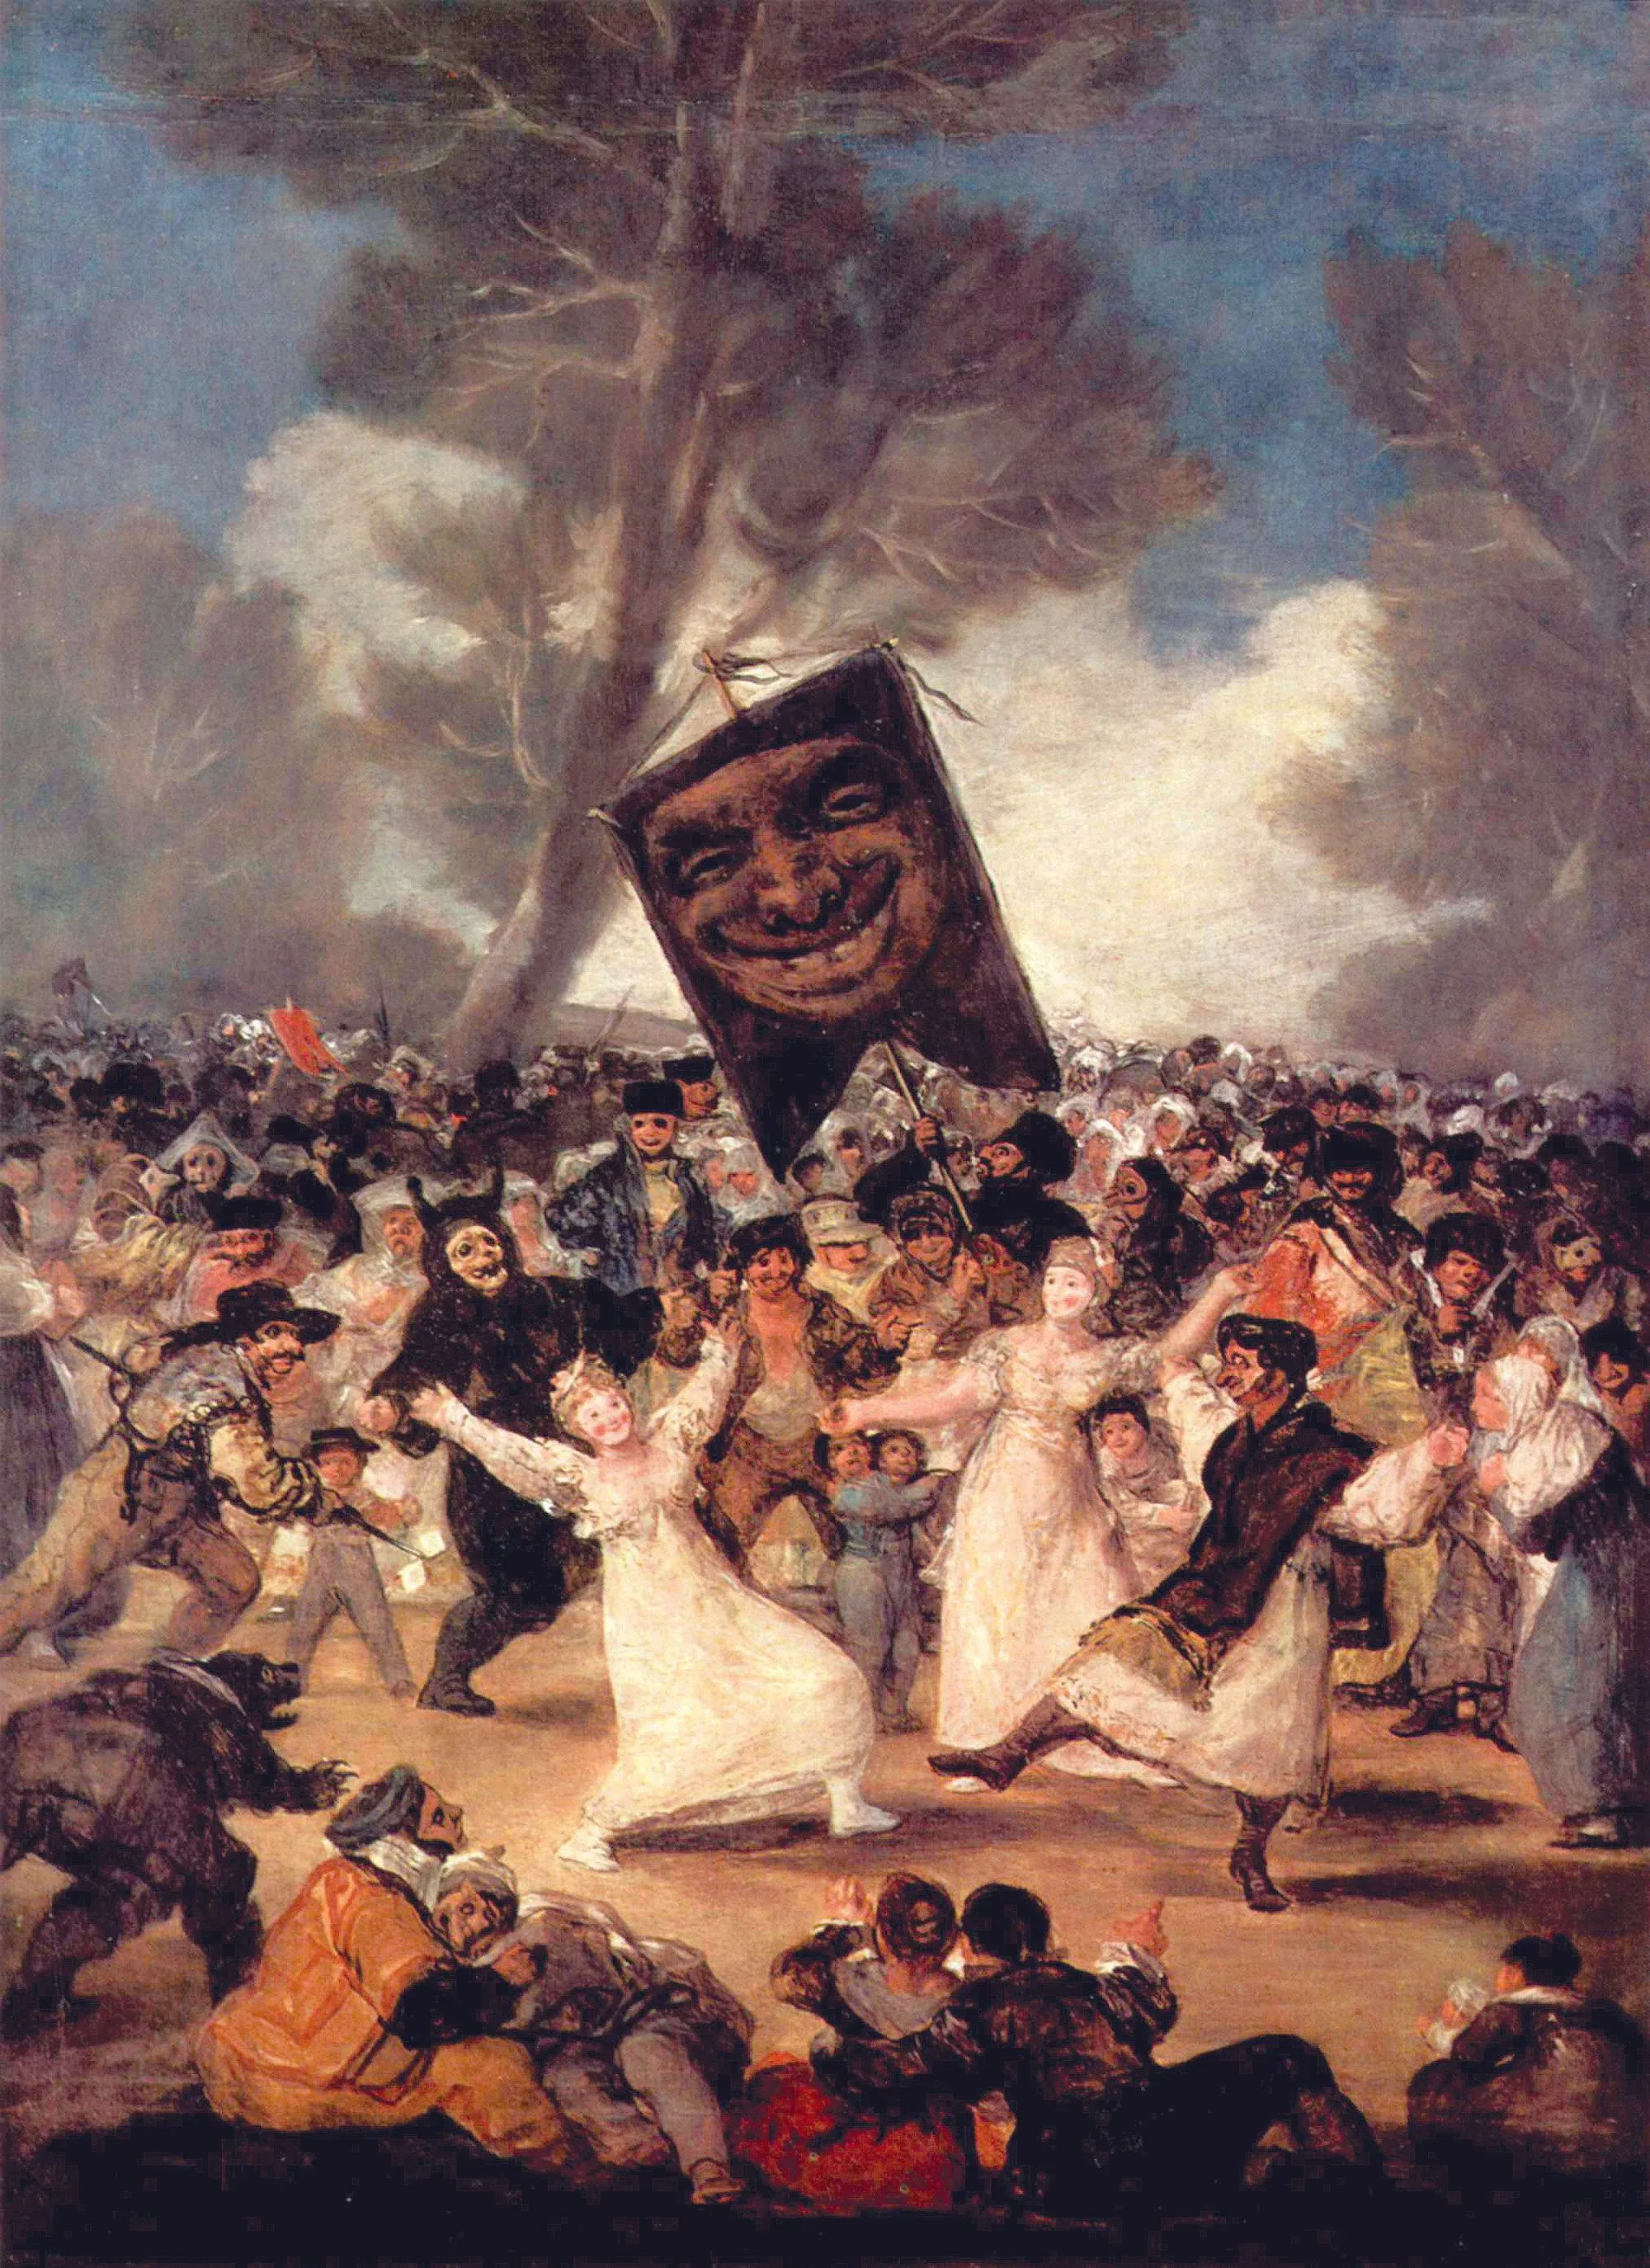 Francisco de Goya, El entierro de la sardina, 1819